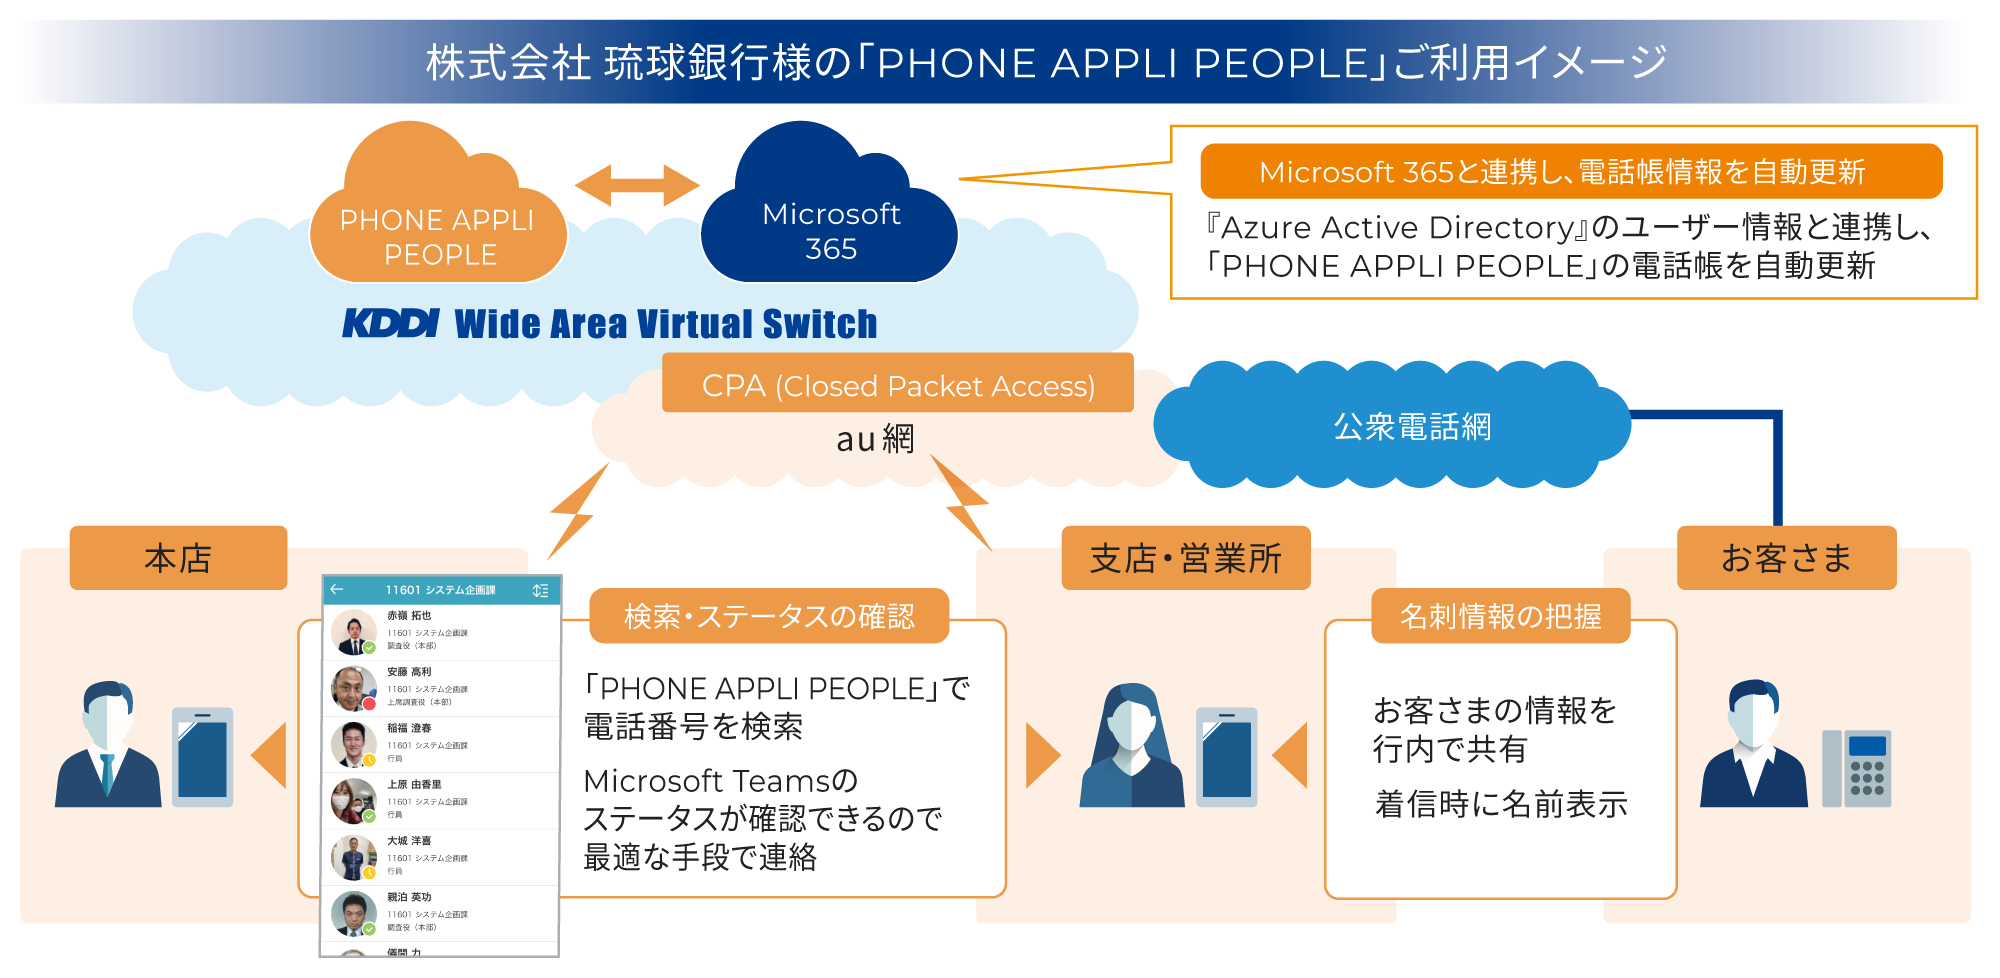 株式会社 琉球銀行様の「PHONE APPLI PEOPLE」を活用した業務環境イメージ図。Microsoft 365と連携し、電話帳情報を自動更新。名刺情報の把握や検索・ステータスの確認を円滑に。